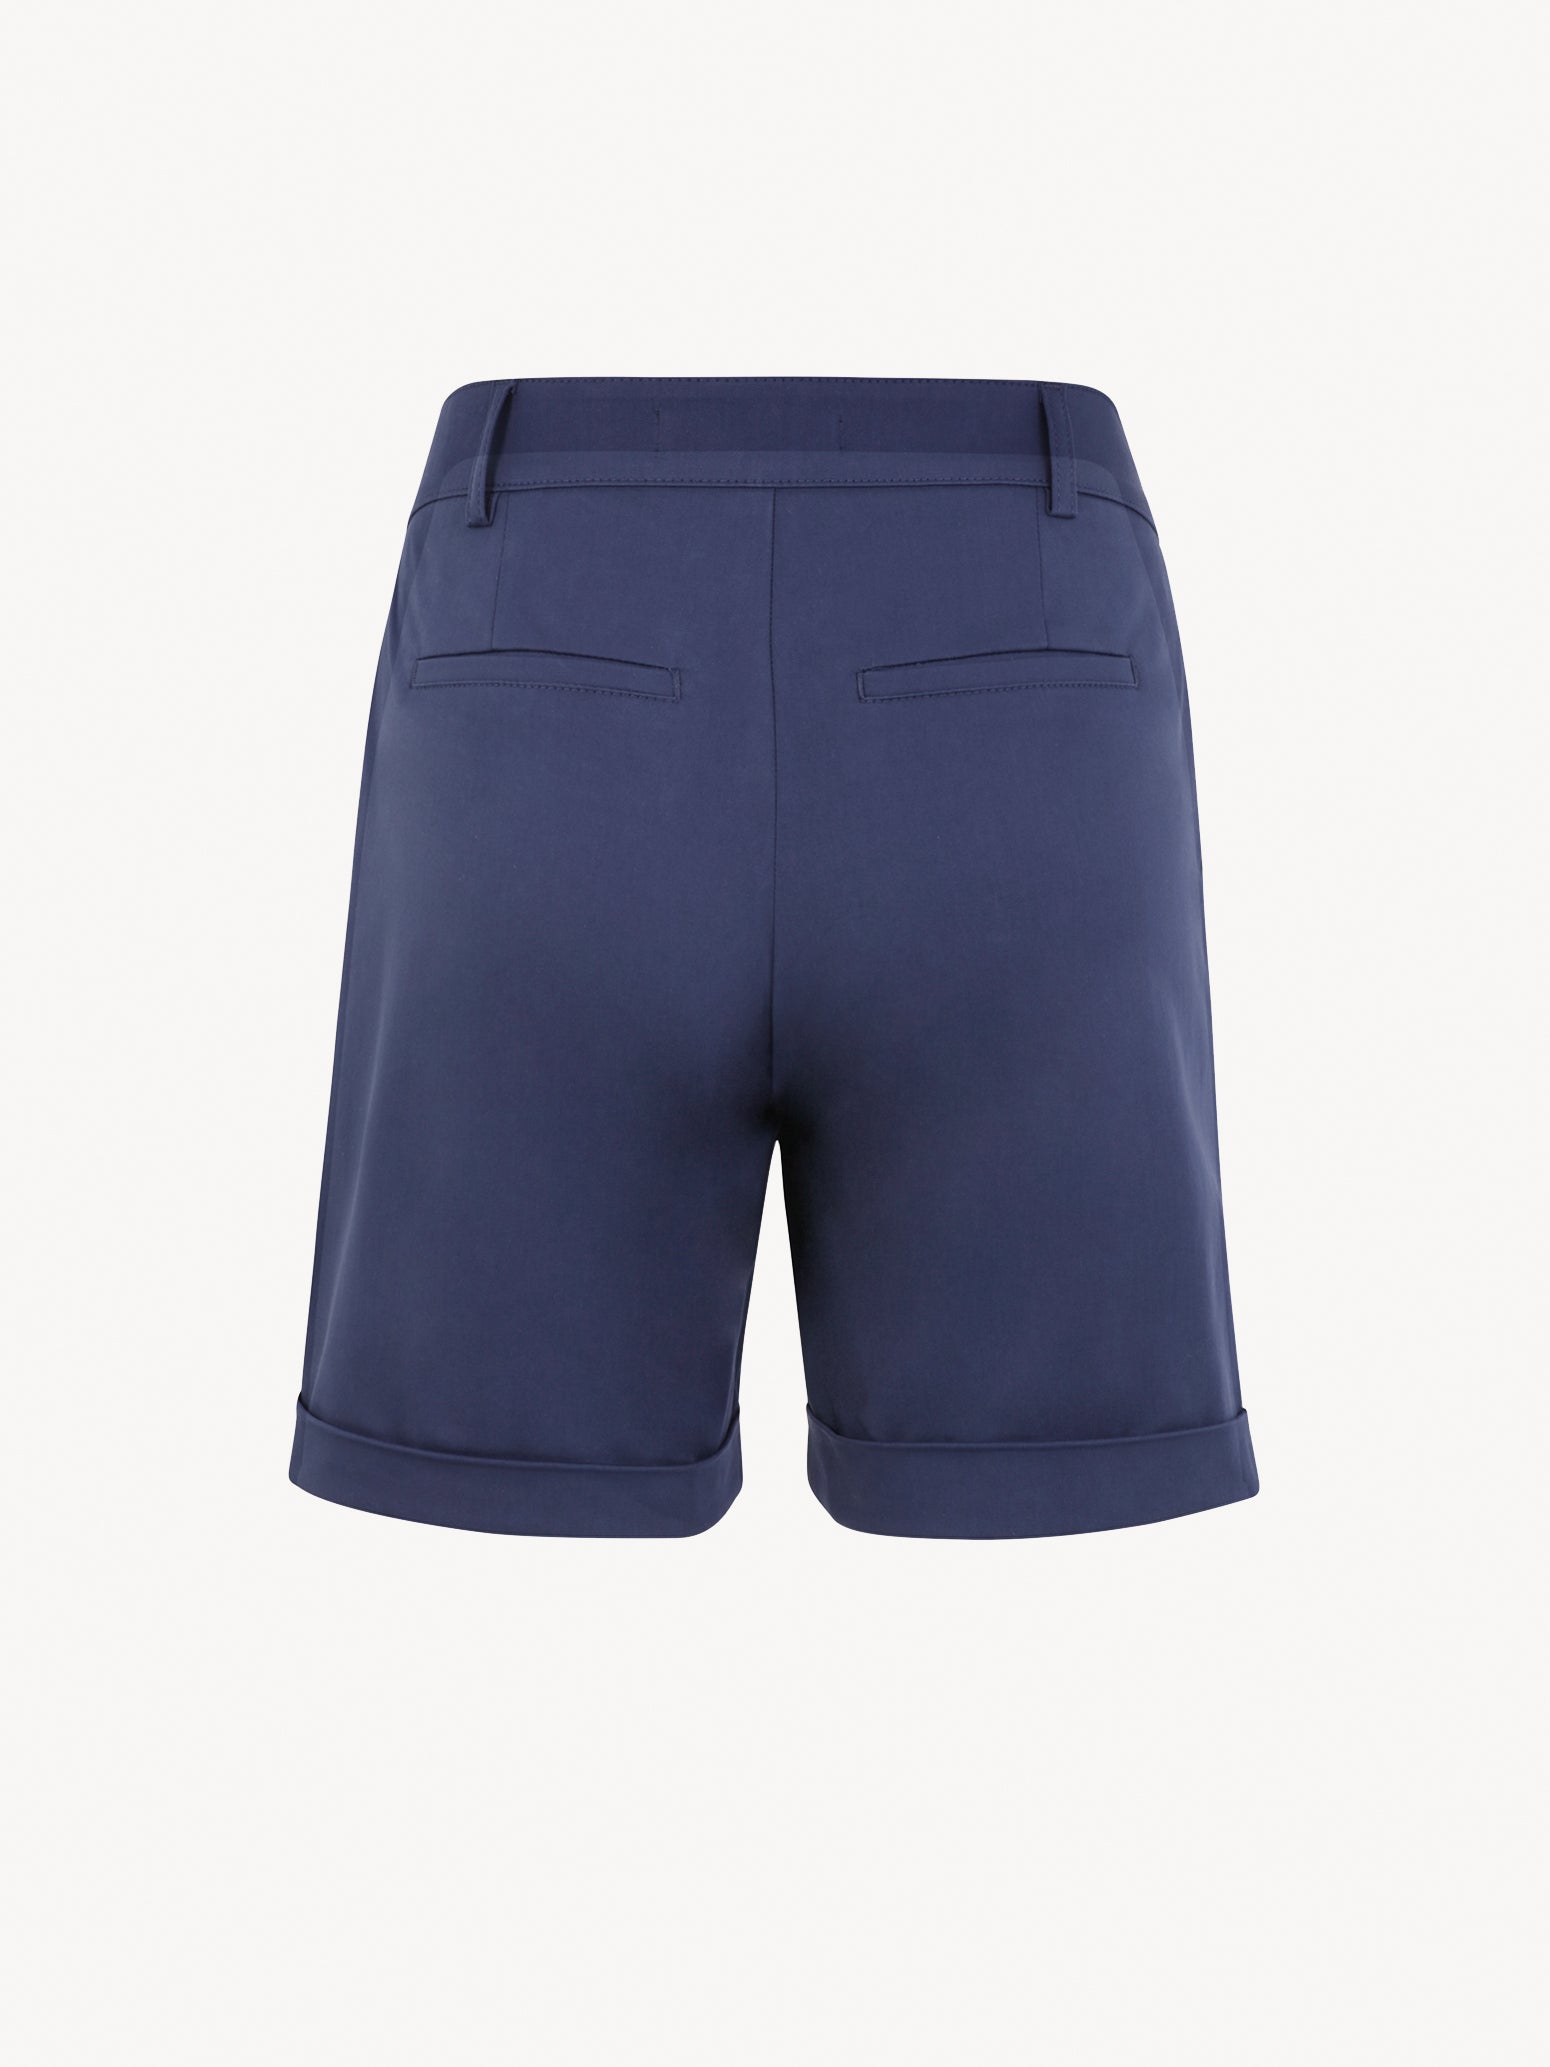 Angono Regular Shorts in Medieval Blue Shorts Tamaris   